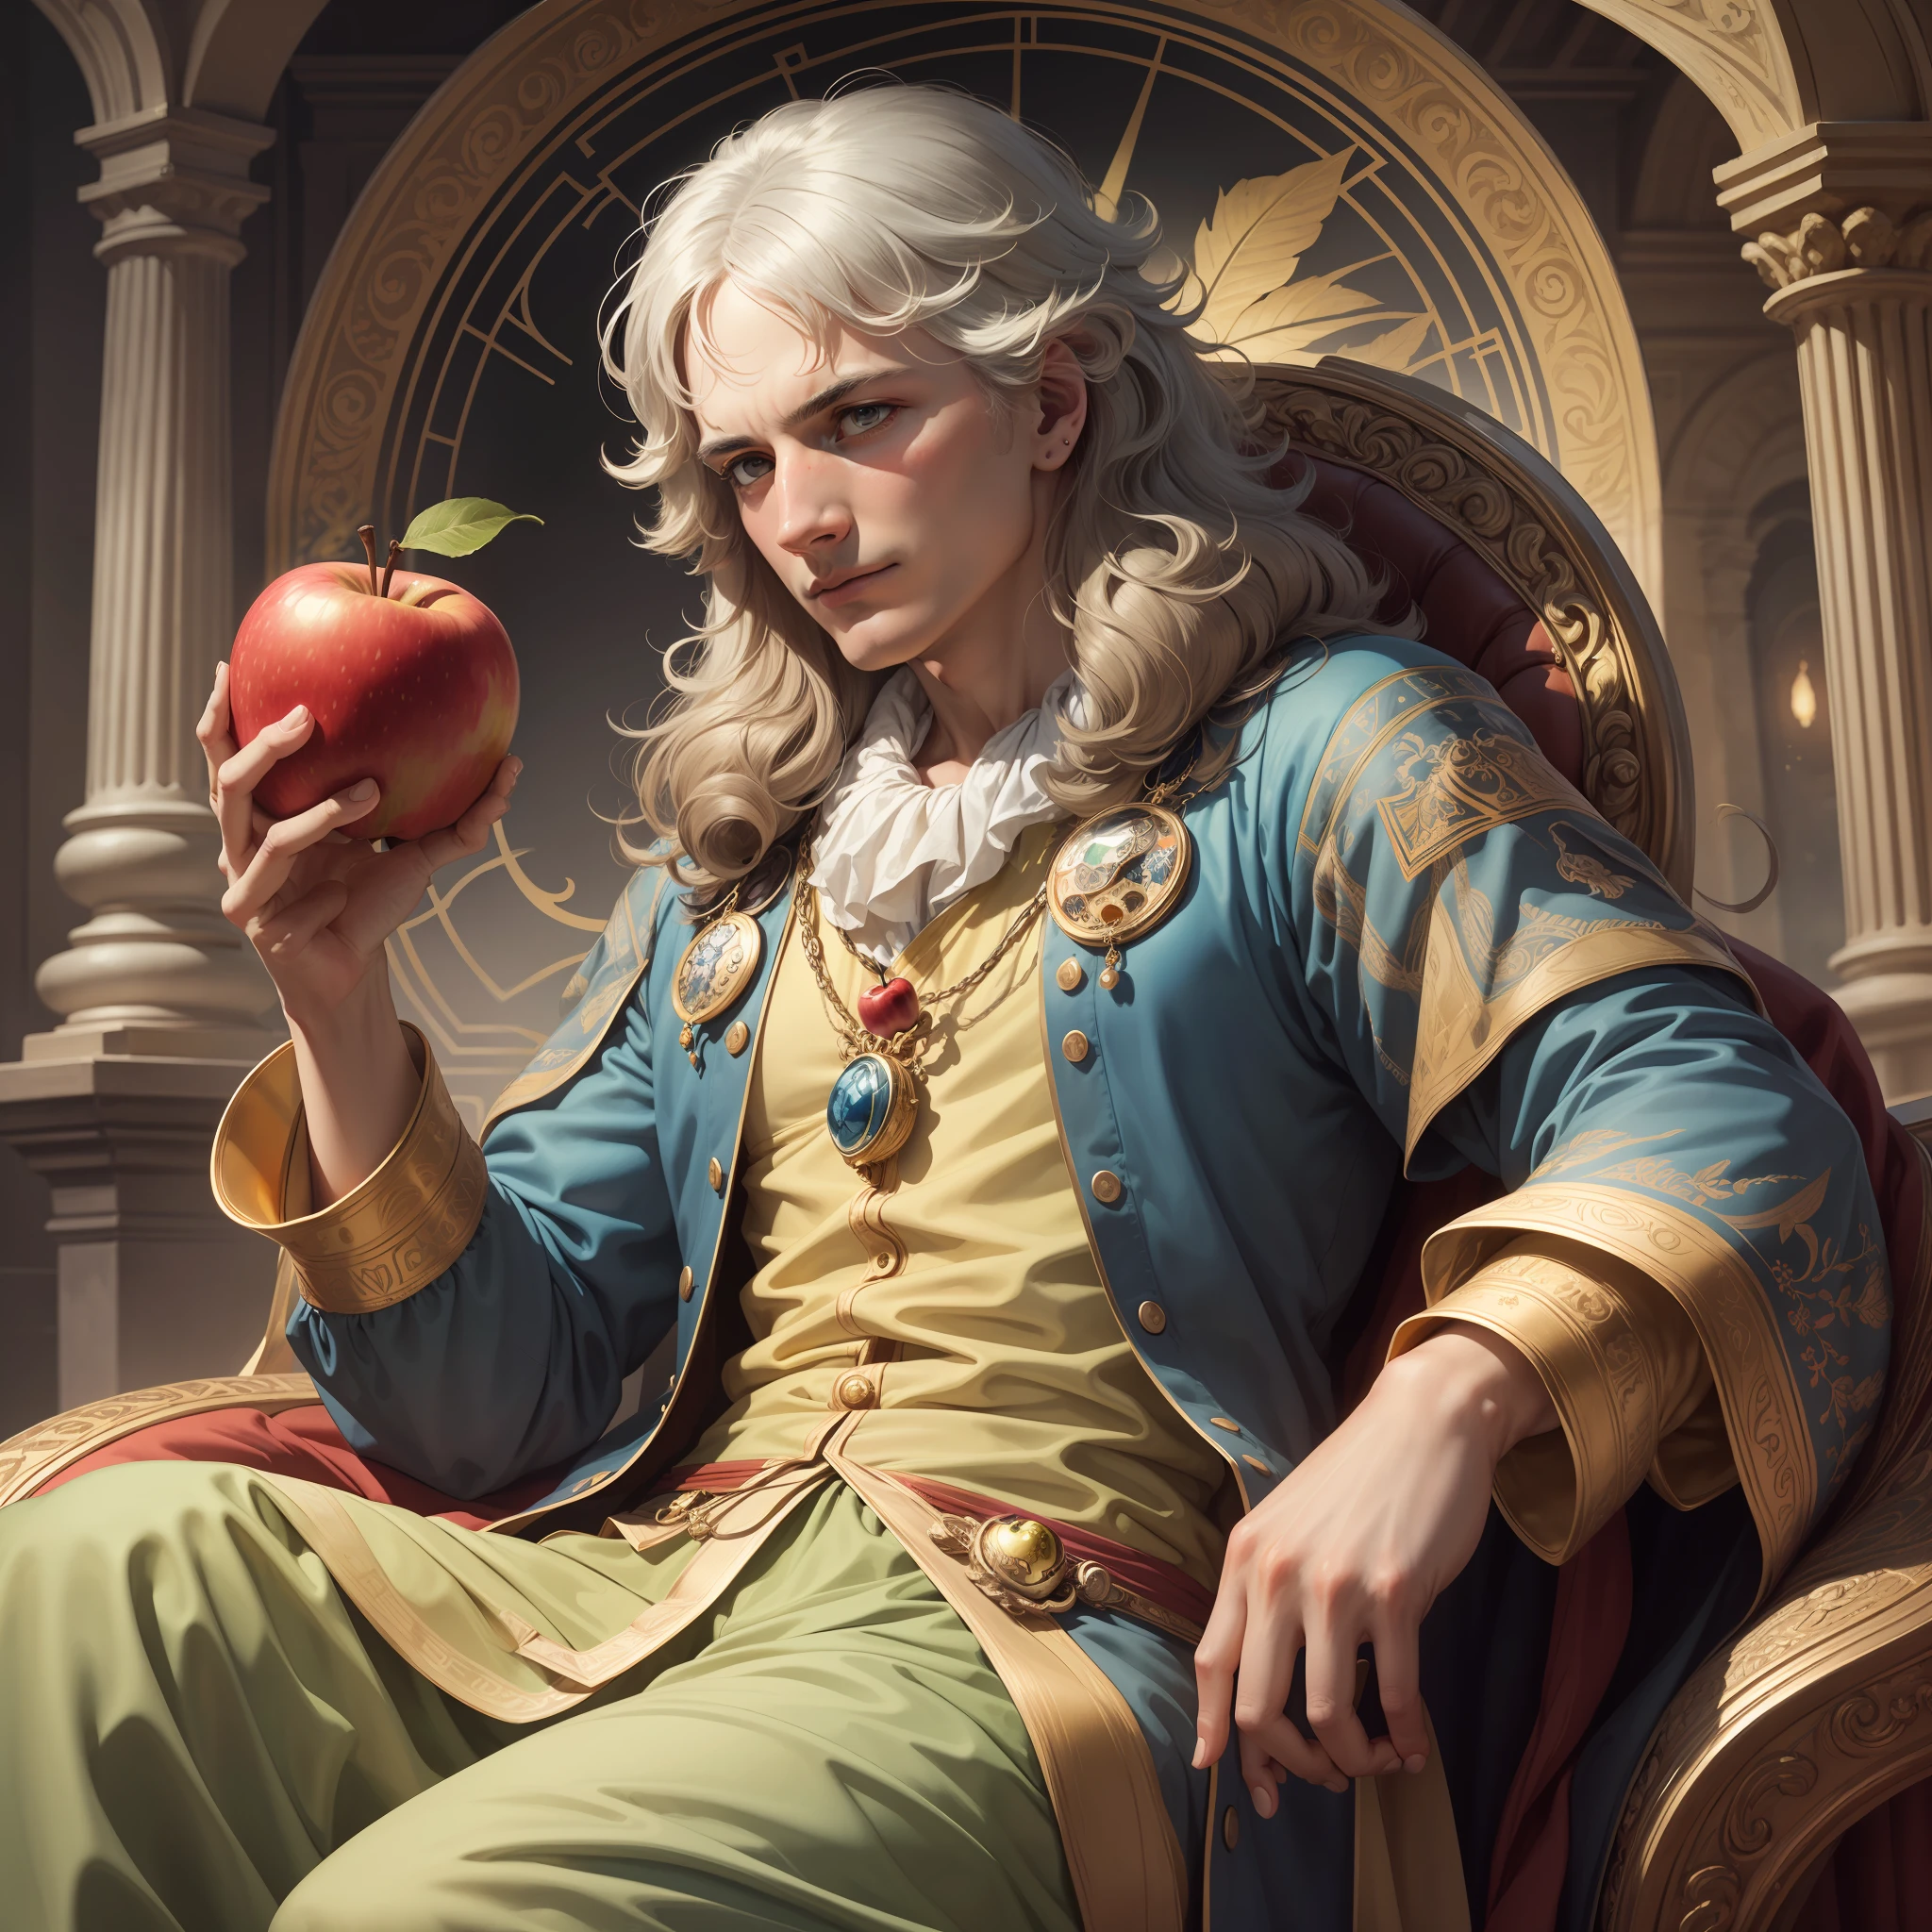 "رسم توضيحي جميل ومفصل للغاية لإسحاق نيوتن وهو يحمل تفاحة مثل الملك المهيب, يجلس على عرشه بتدرج لا تشوبه شائبة من الألوان."